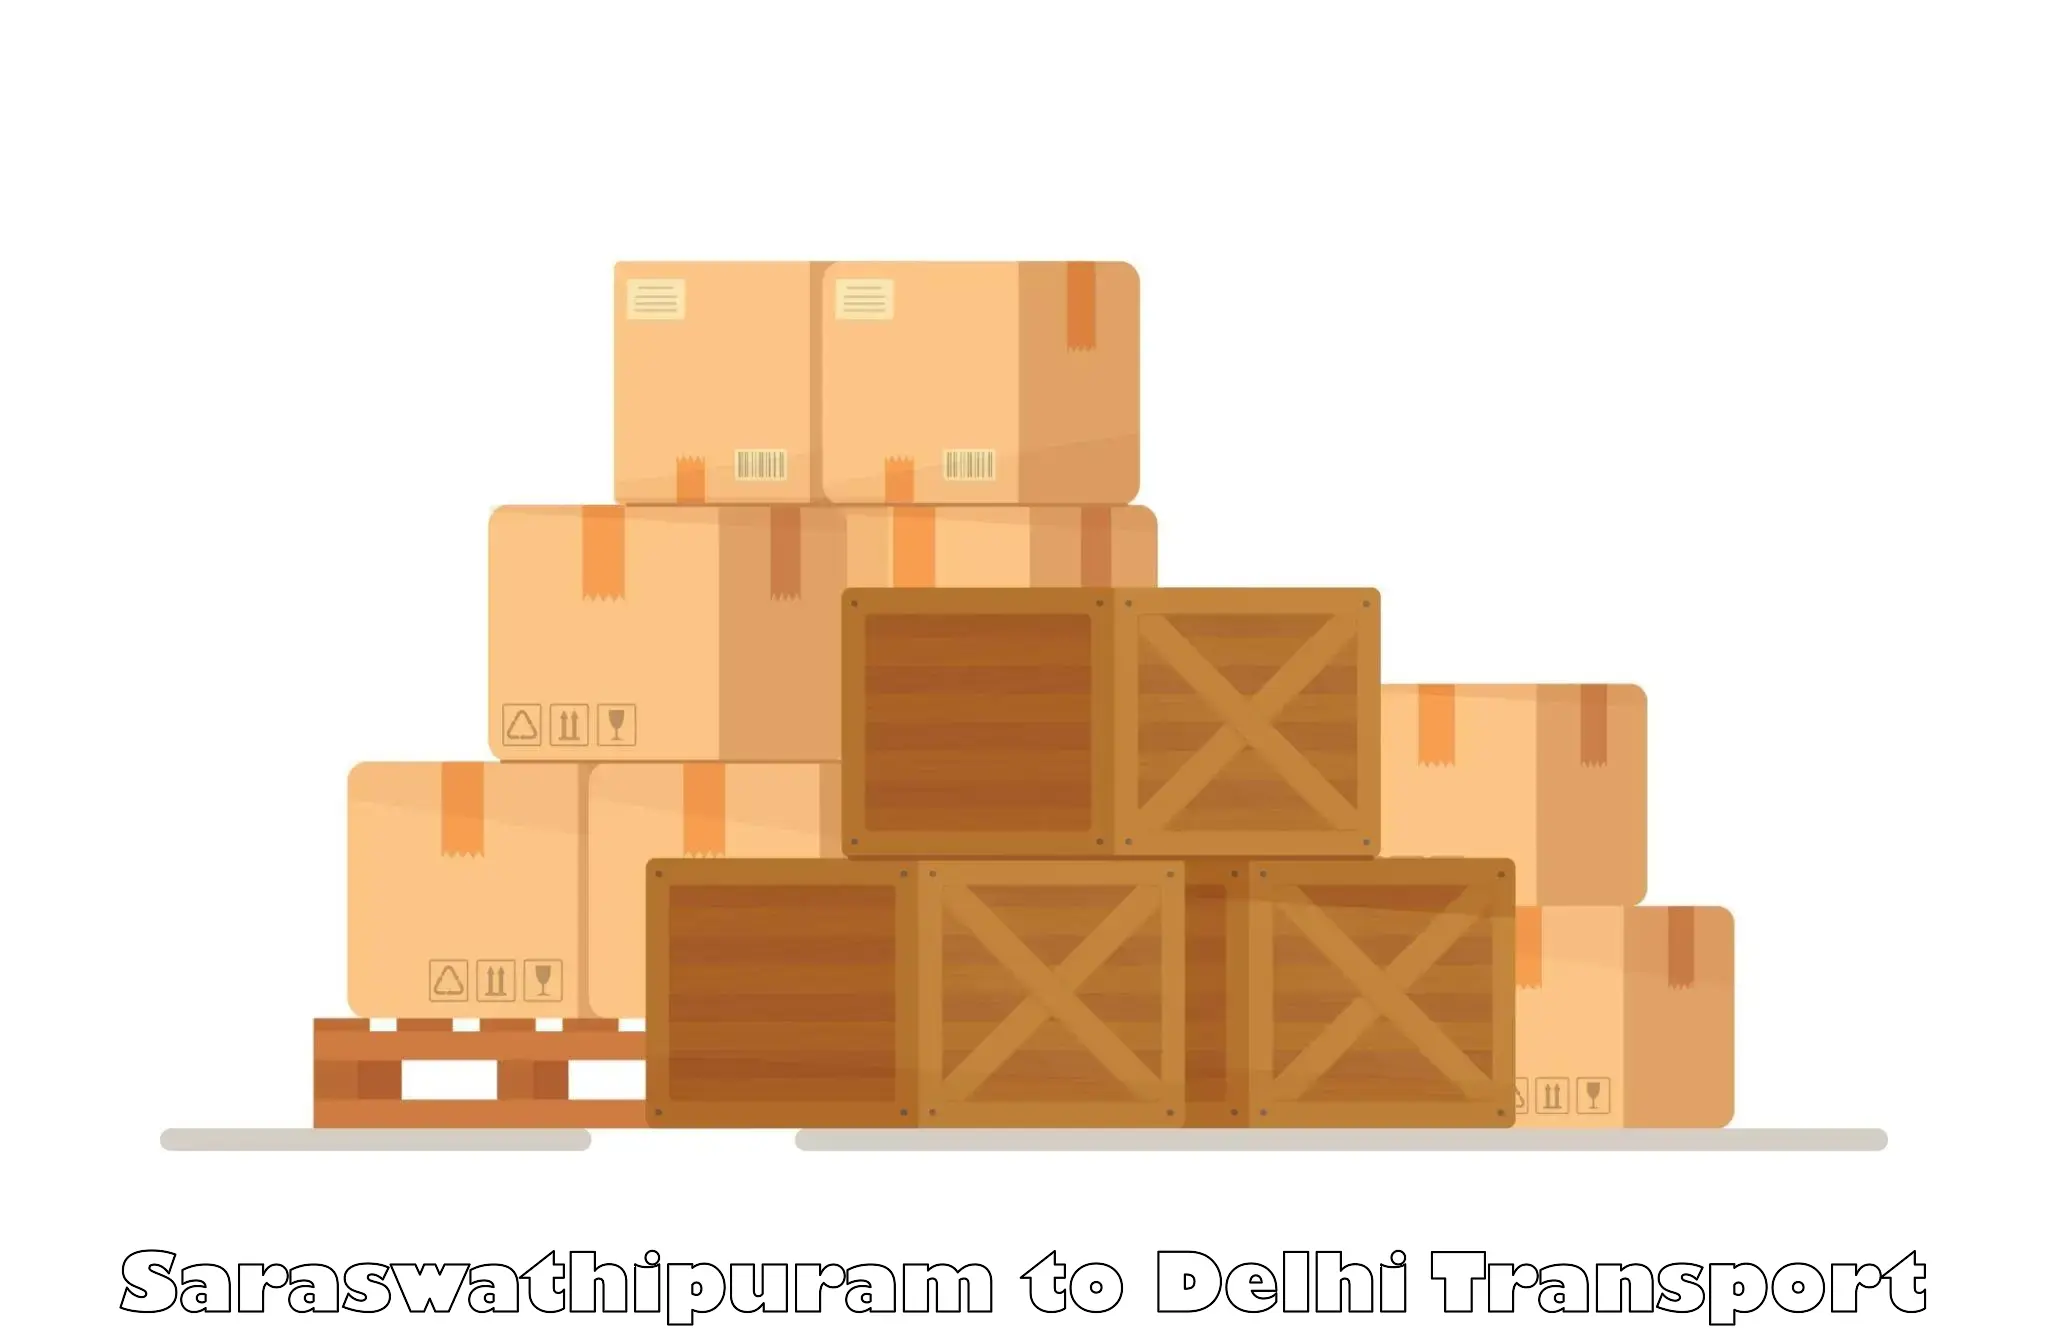 Two wheeler parcel service Saraswathipuram to University of Delhi